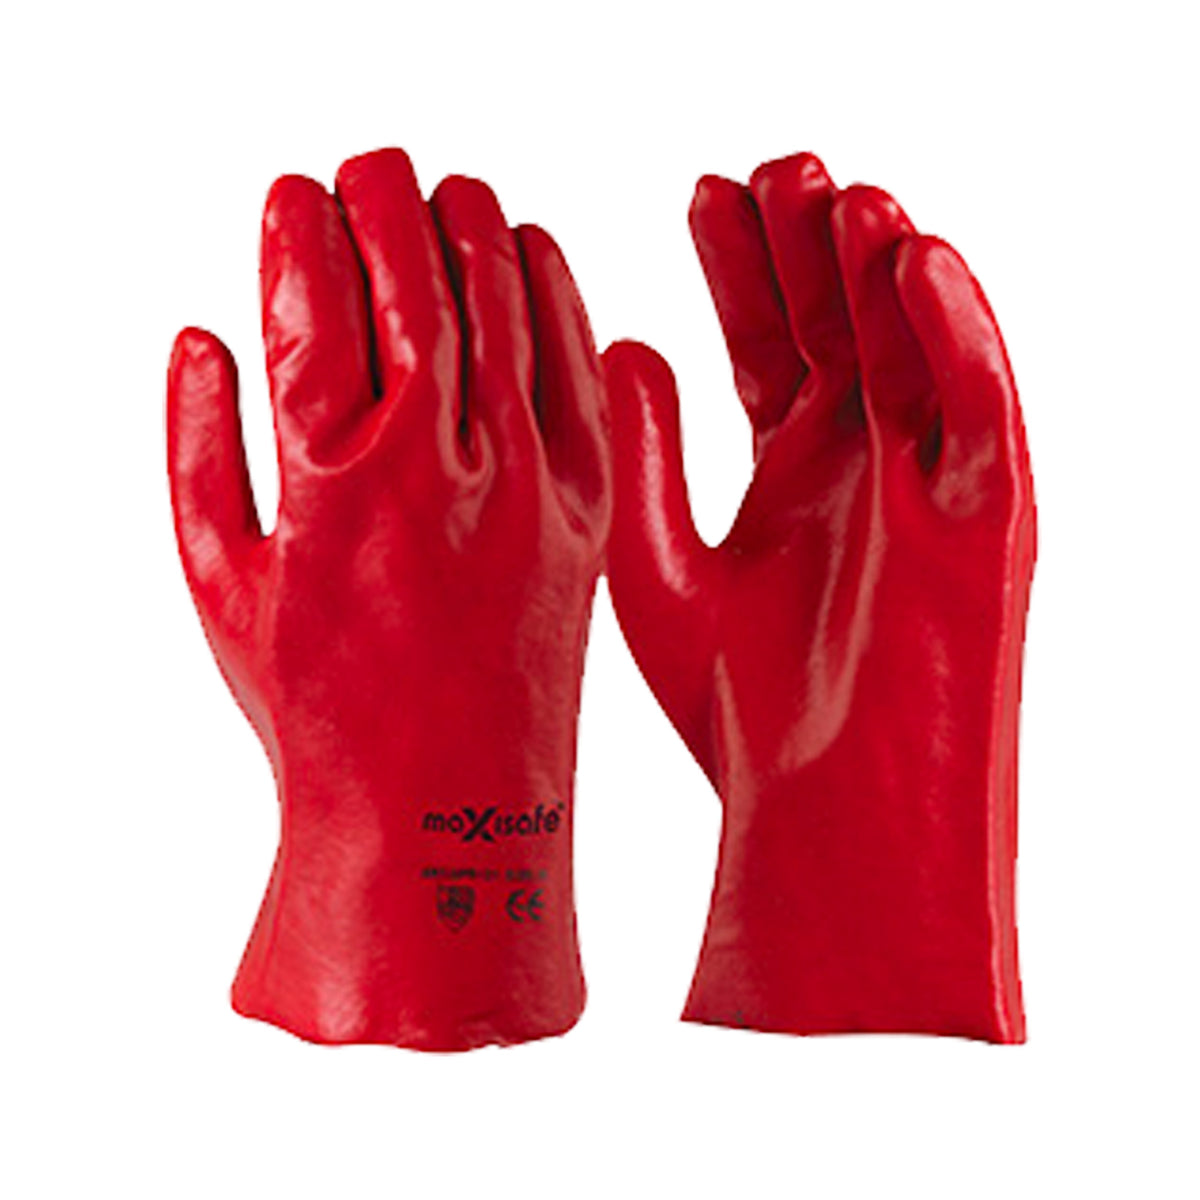 red pvc gauntlet glove